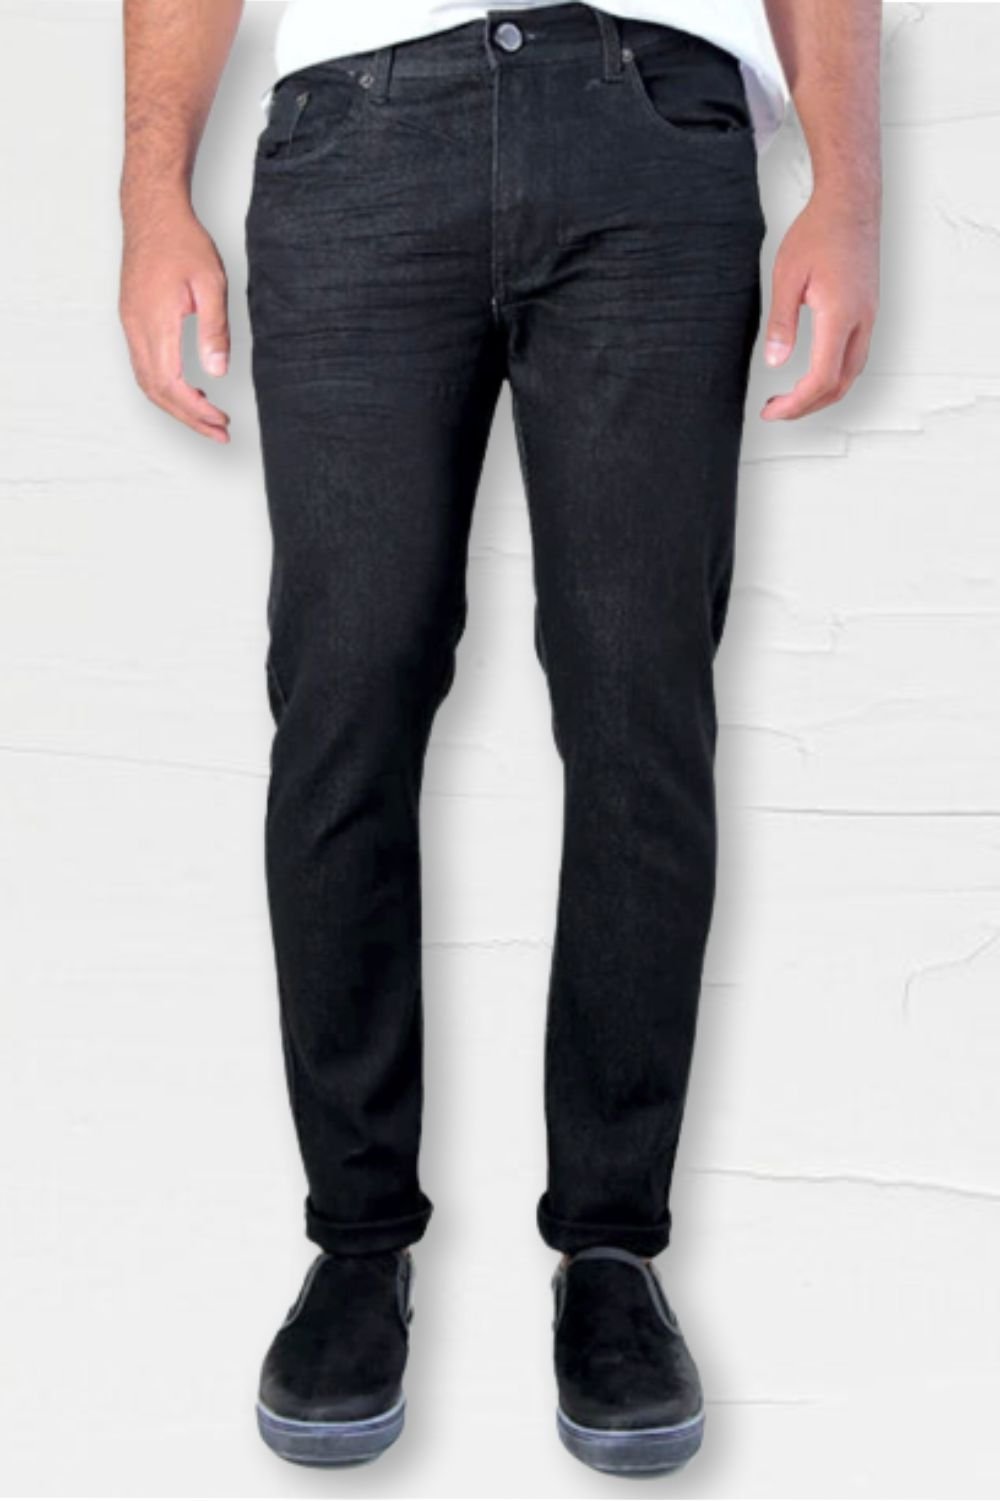 calca jeans slim black com elastano five pockets conceito prisma det 1